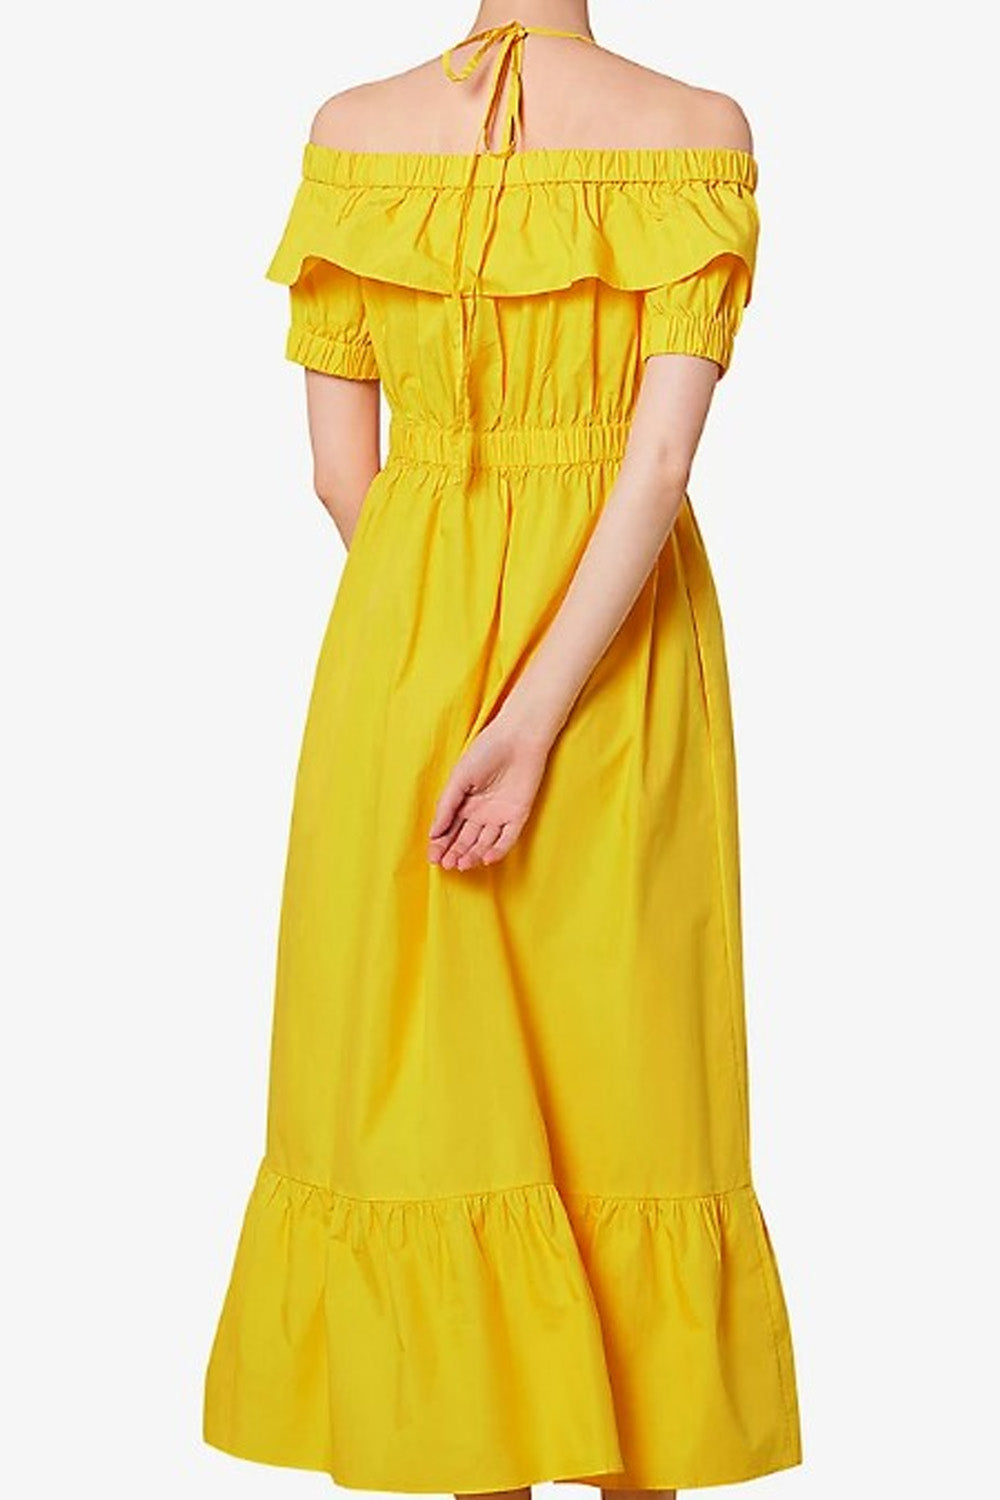 Nebulous yellow Dress